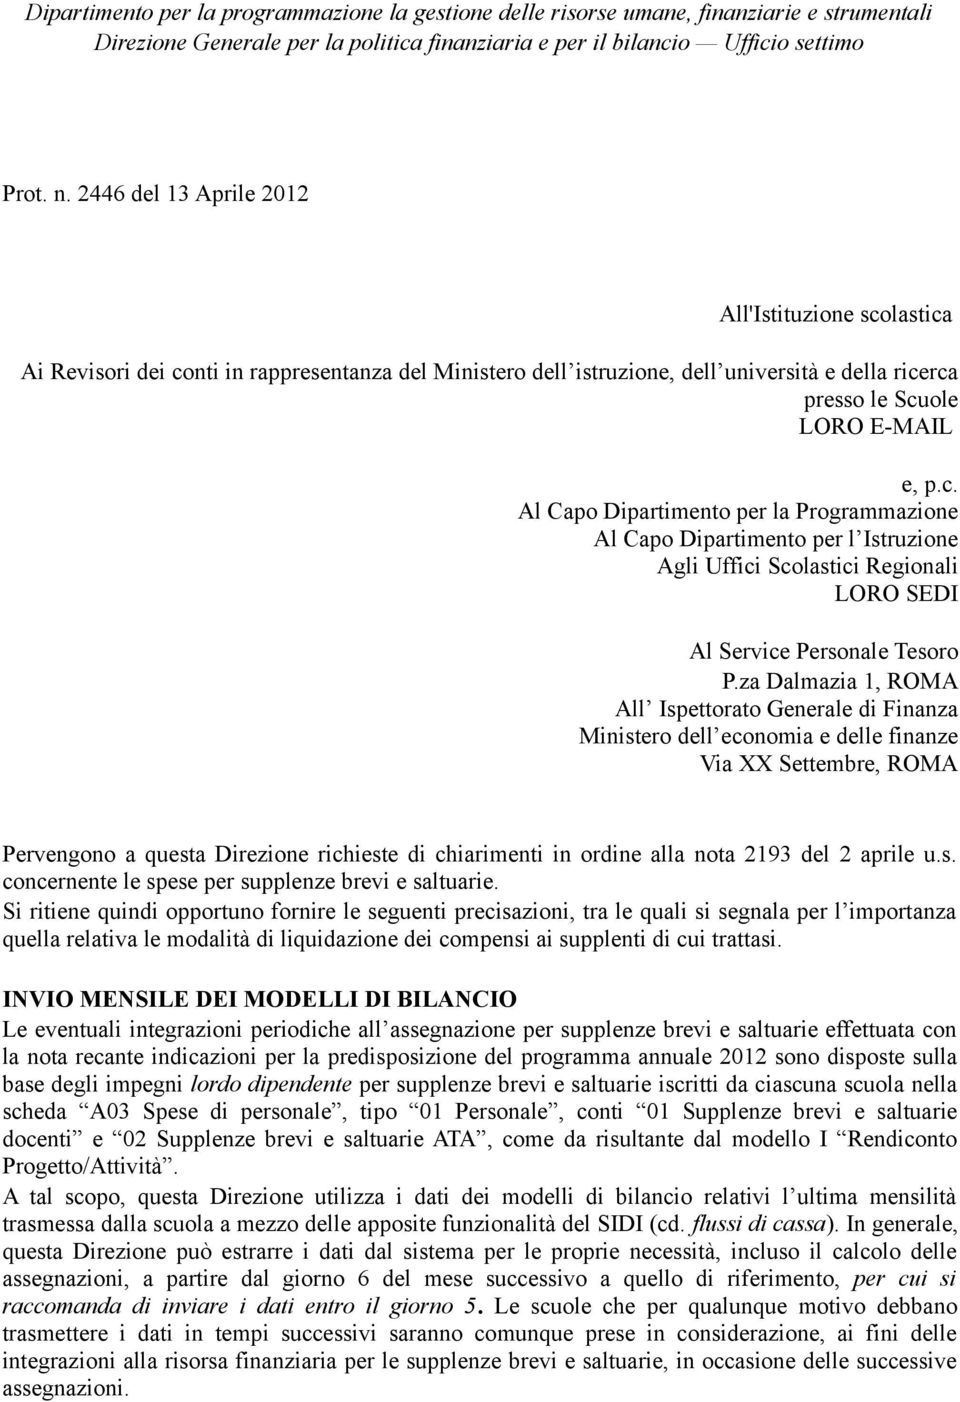 za Dalmazia 1, ROMA All Ispettorato Generale di Finanza Ministero dell economia e delle finanze Via XX Settembre, ROMA Pervengono a questa Direzione richieste di chiarimenti in ordine alla nota 2193